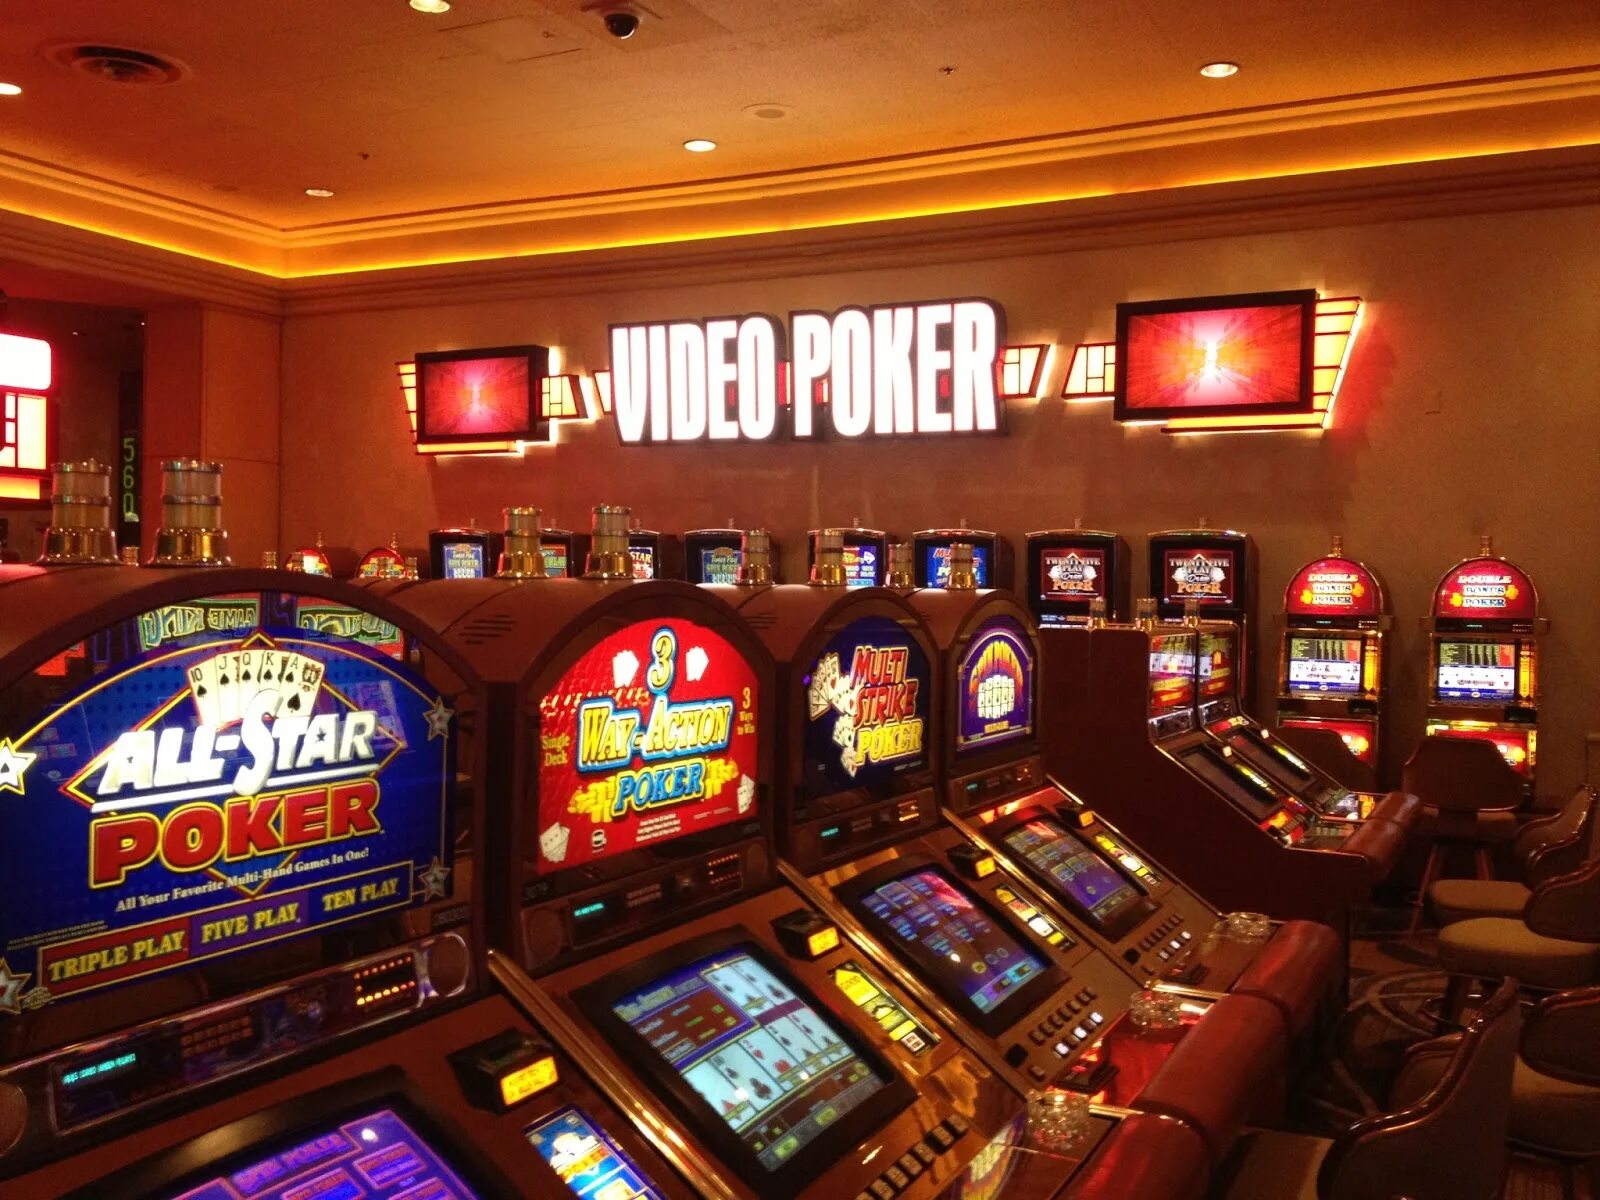 Игровой бесплатный автомат покер. Игровой автомат казино. Игровые автоматы видеопокер. Покерный игровой автомат. Игровые автоматы Покер.